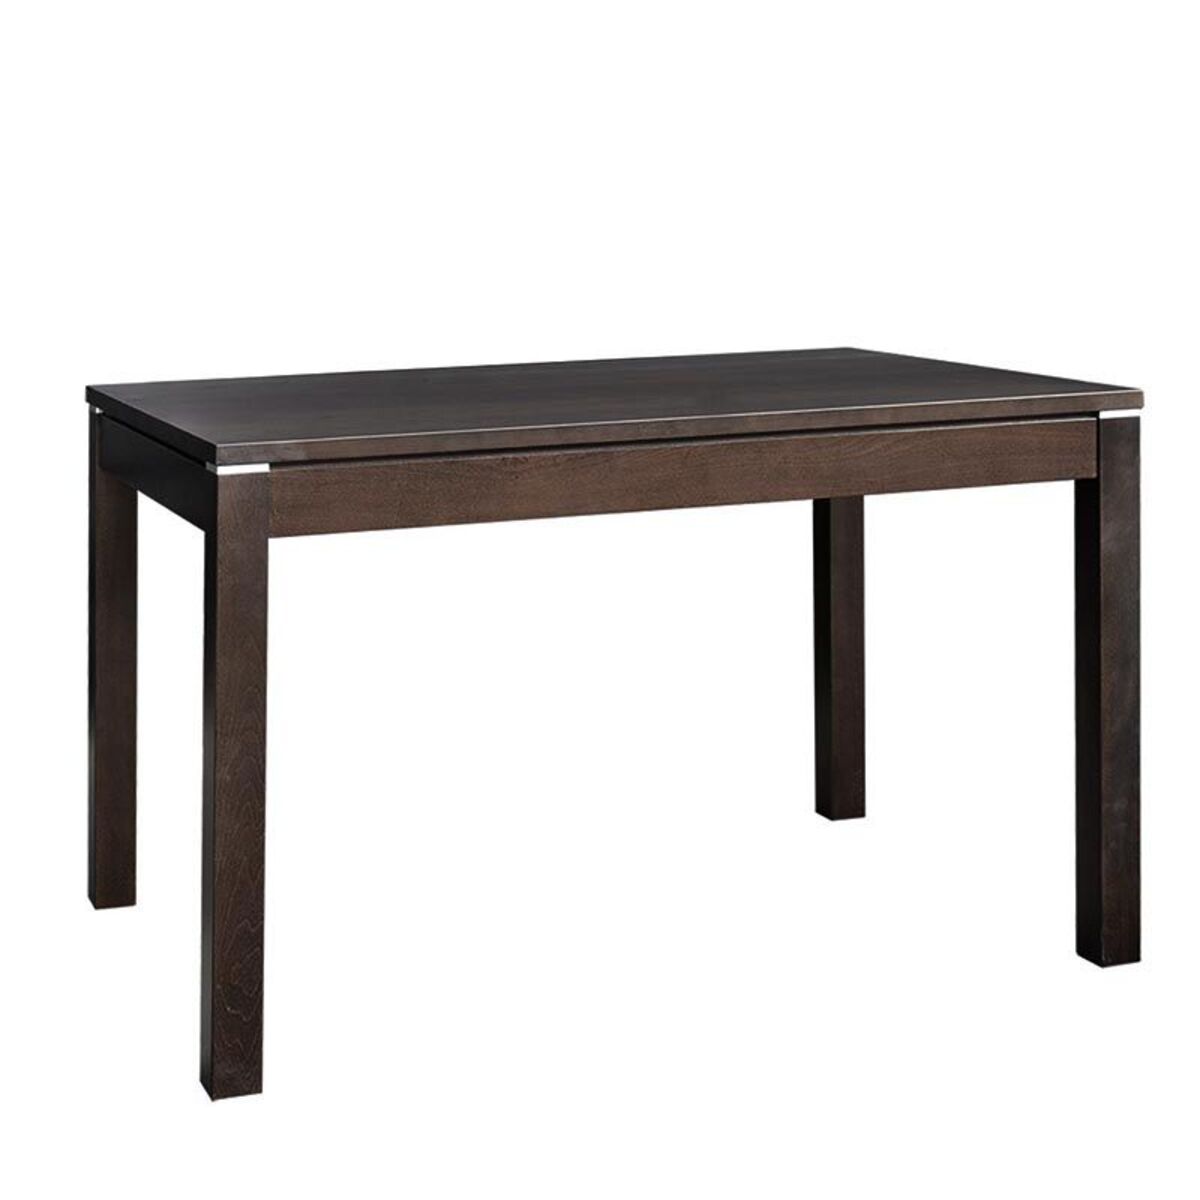 Table rectangulaire lennig 80x120 cm en bois teinté wengé